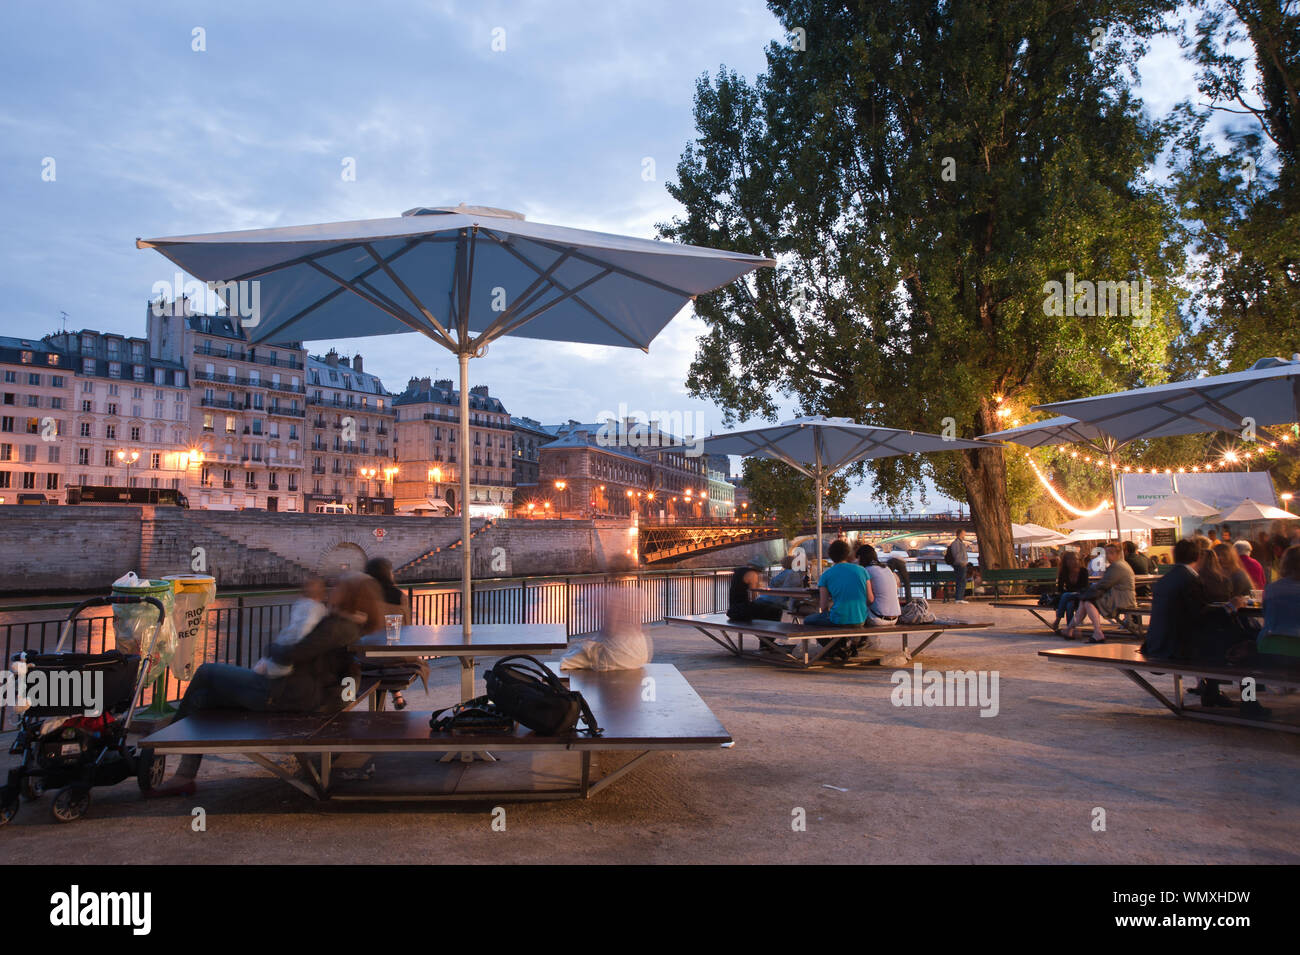 Paris, Abend an der Seine, Paris Plage - Paris, Evening at the Banks of the River Seine, Paris Plage Stock Photo